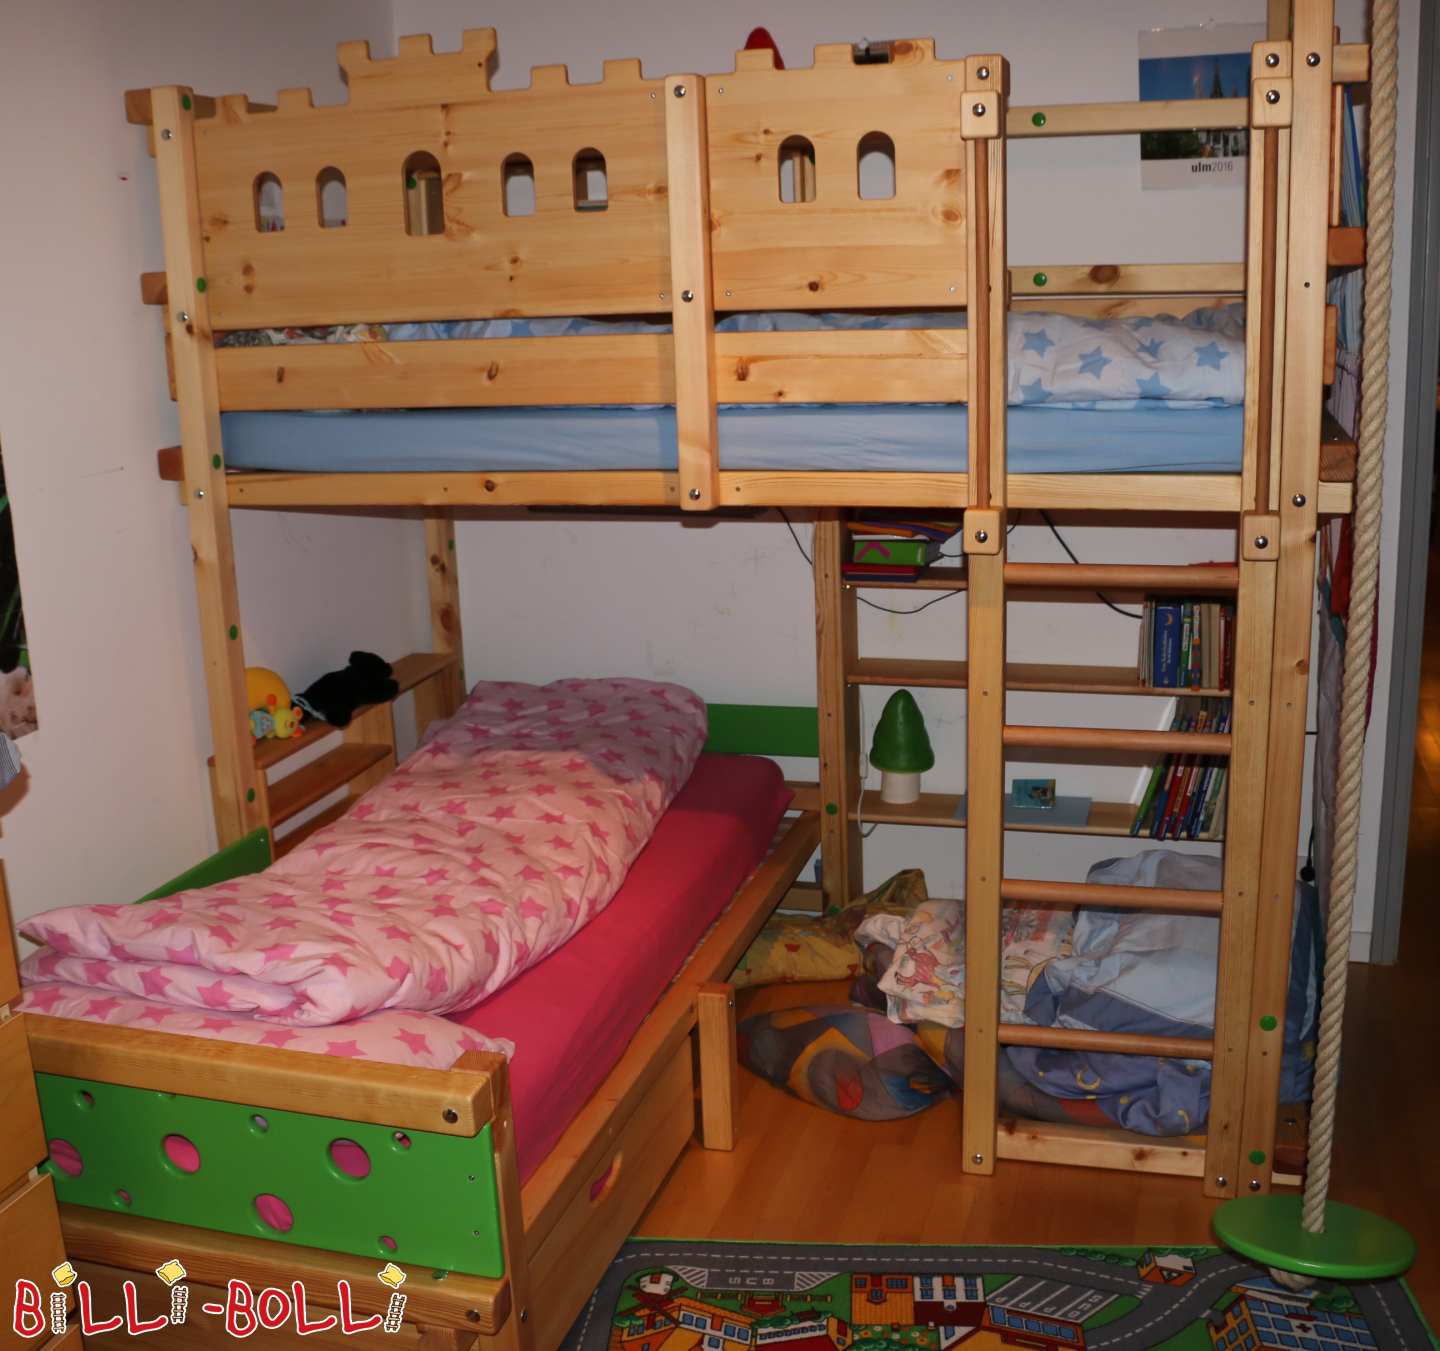 سرير بطابقين فوق الزاوية ، صنوبر مزيت ، فارس / فأر ، أرجوحة ، صندوق سرير (التصنيف: اكسسوارات/قطع تمديد مستعملة)